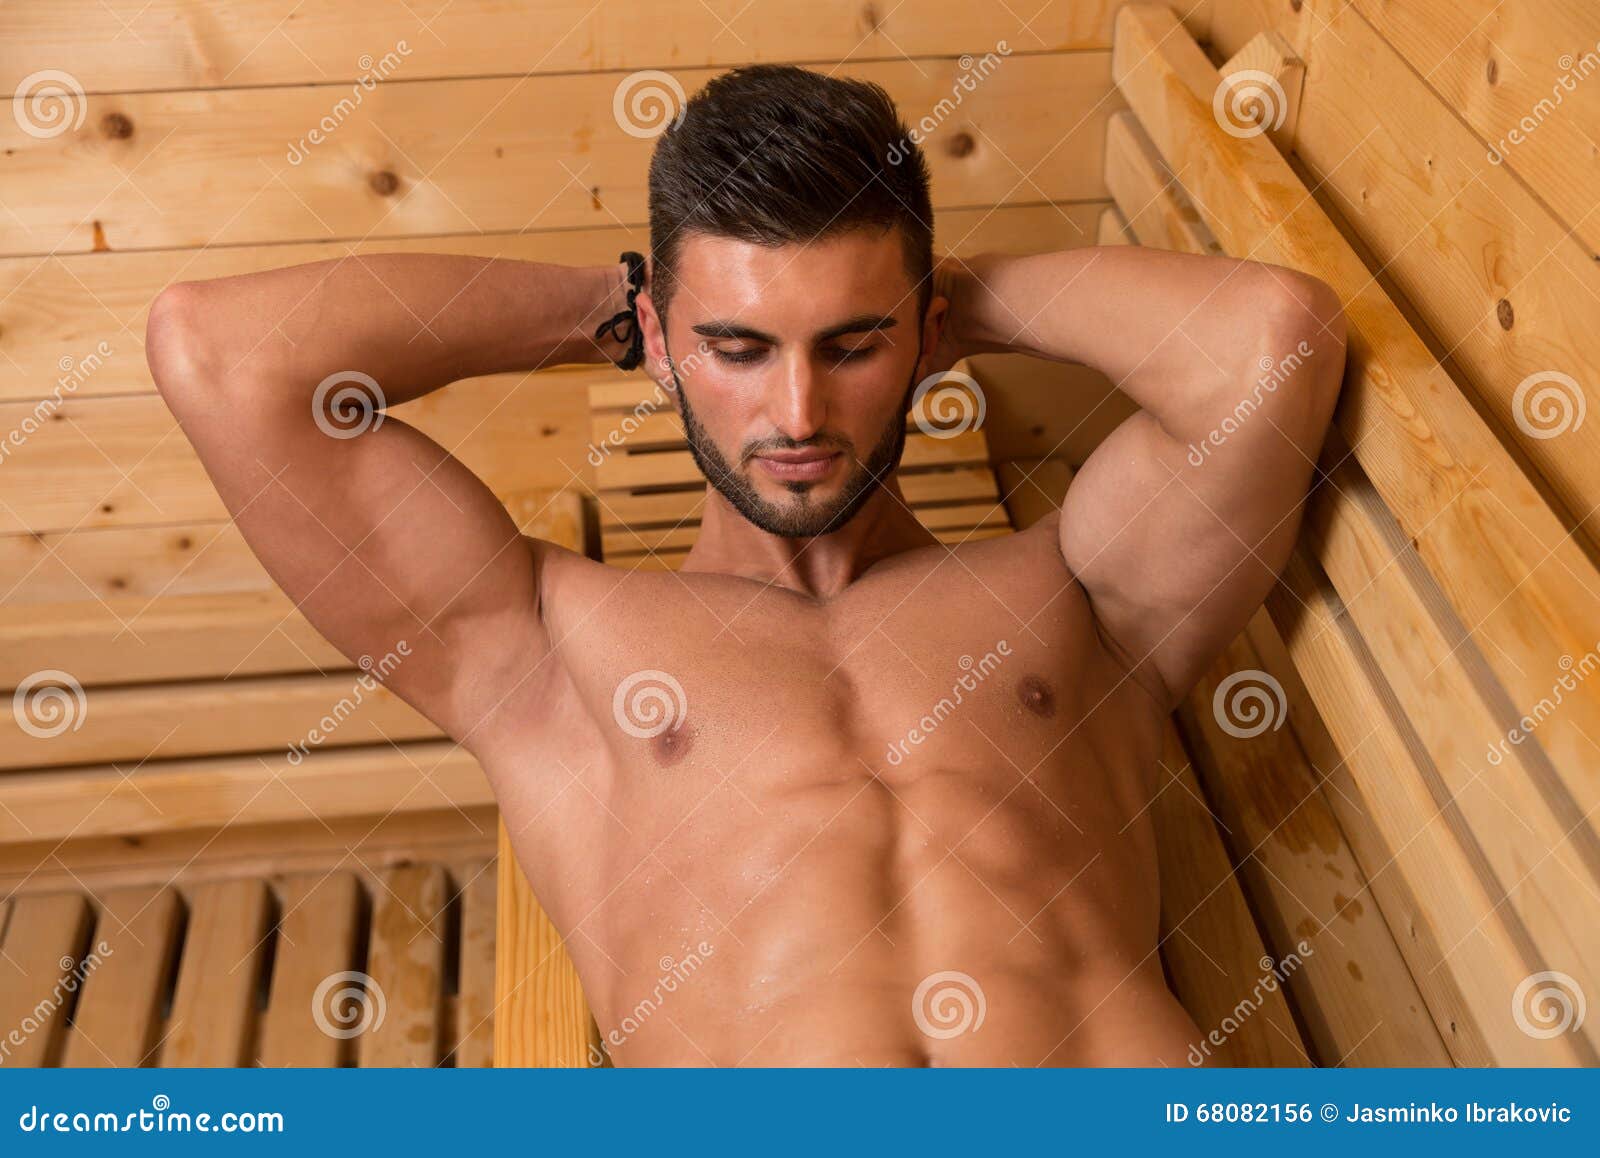 мужская эротика в бане фото 119